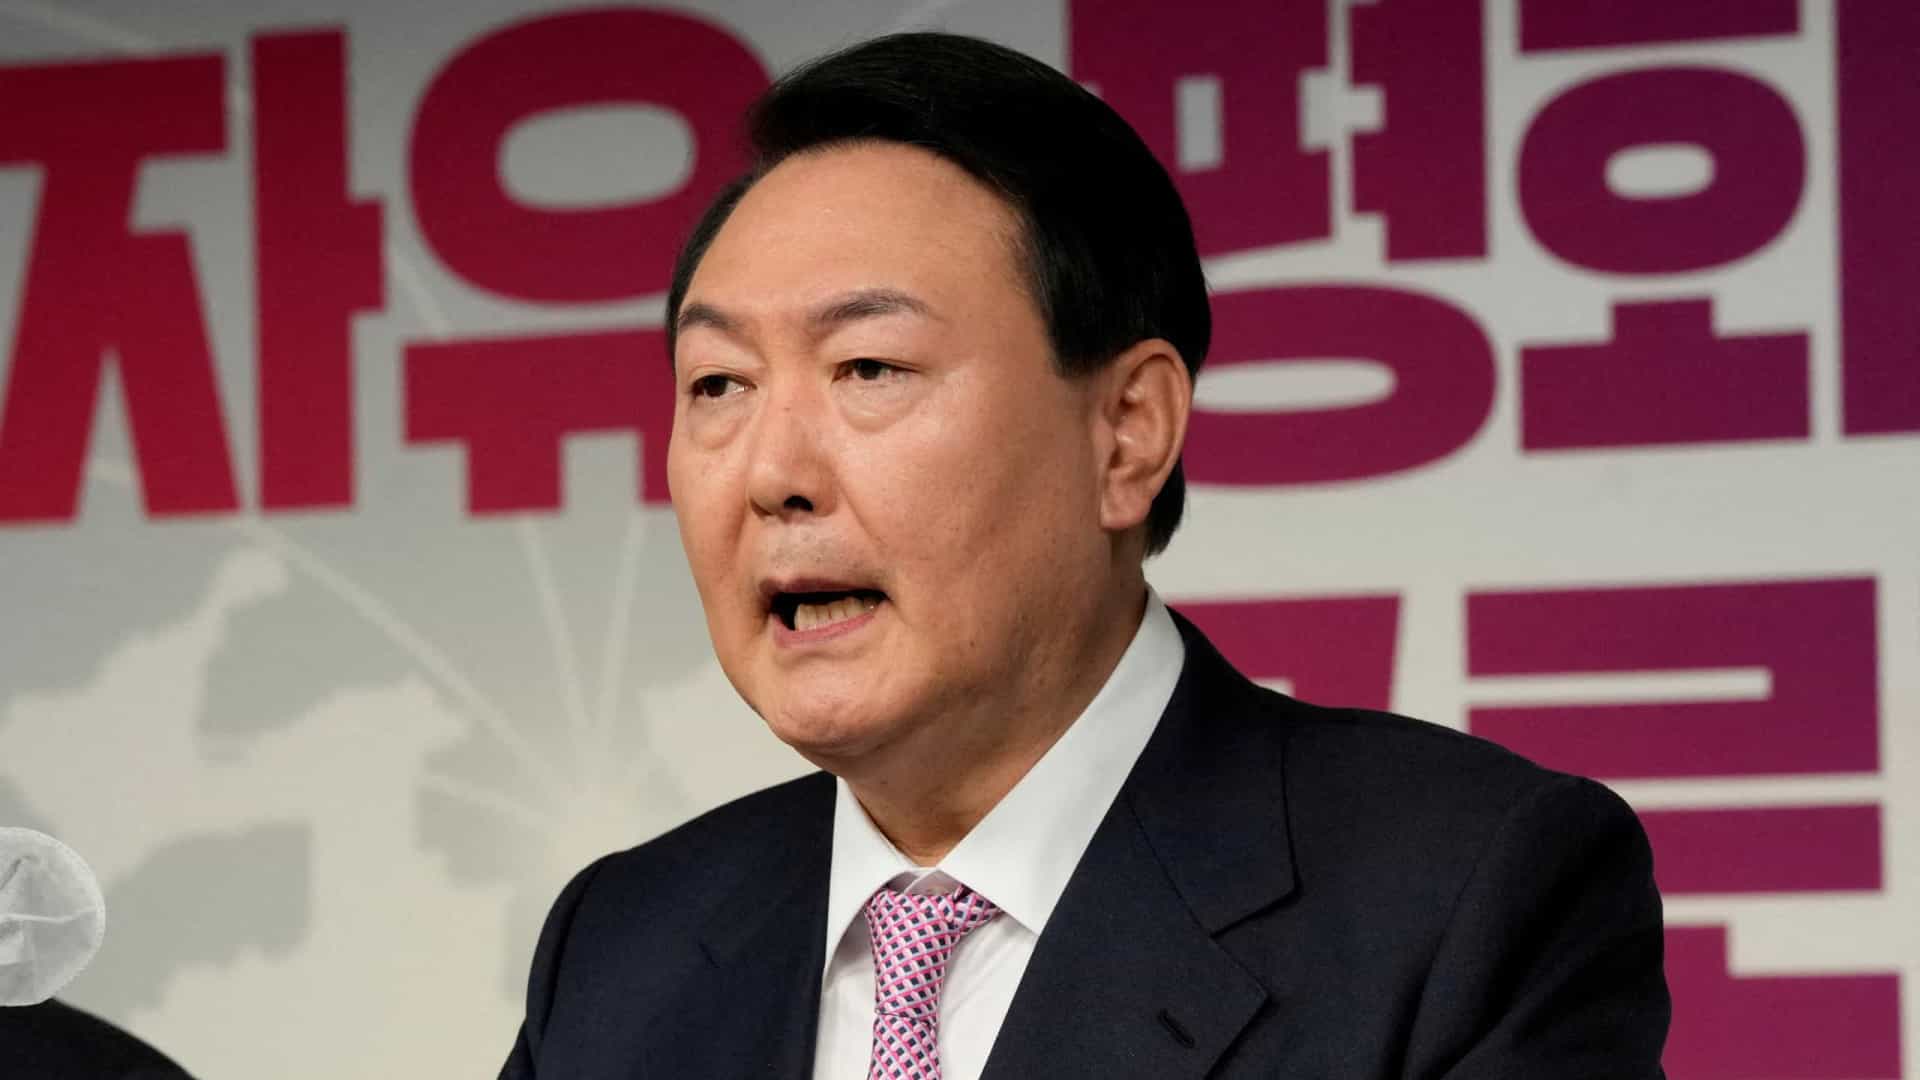 Coreia do Sul: O novo presidente apoia a semana de trabalho de 120 horas